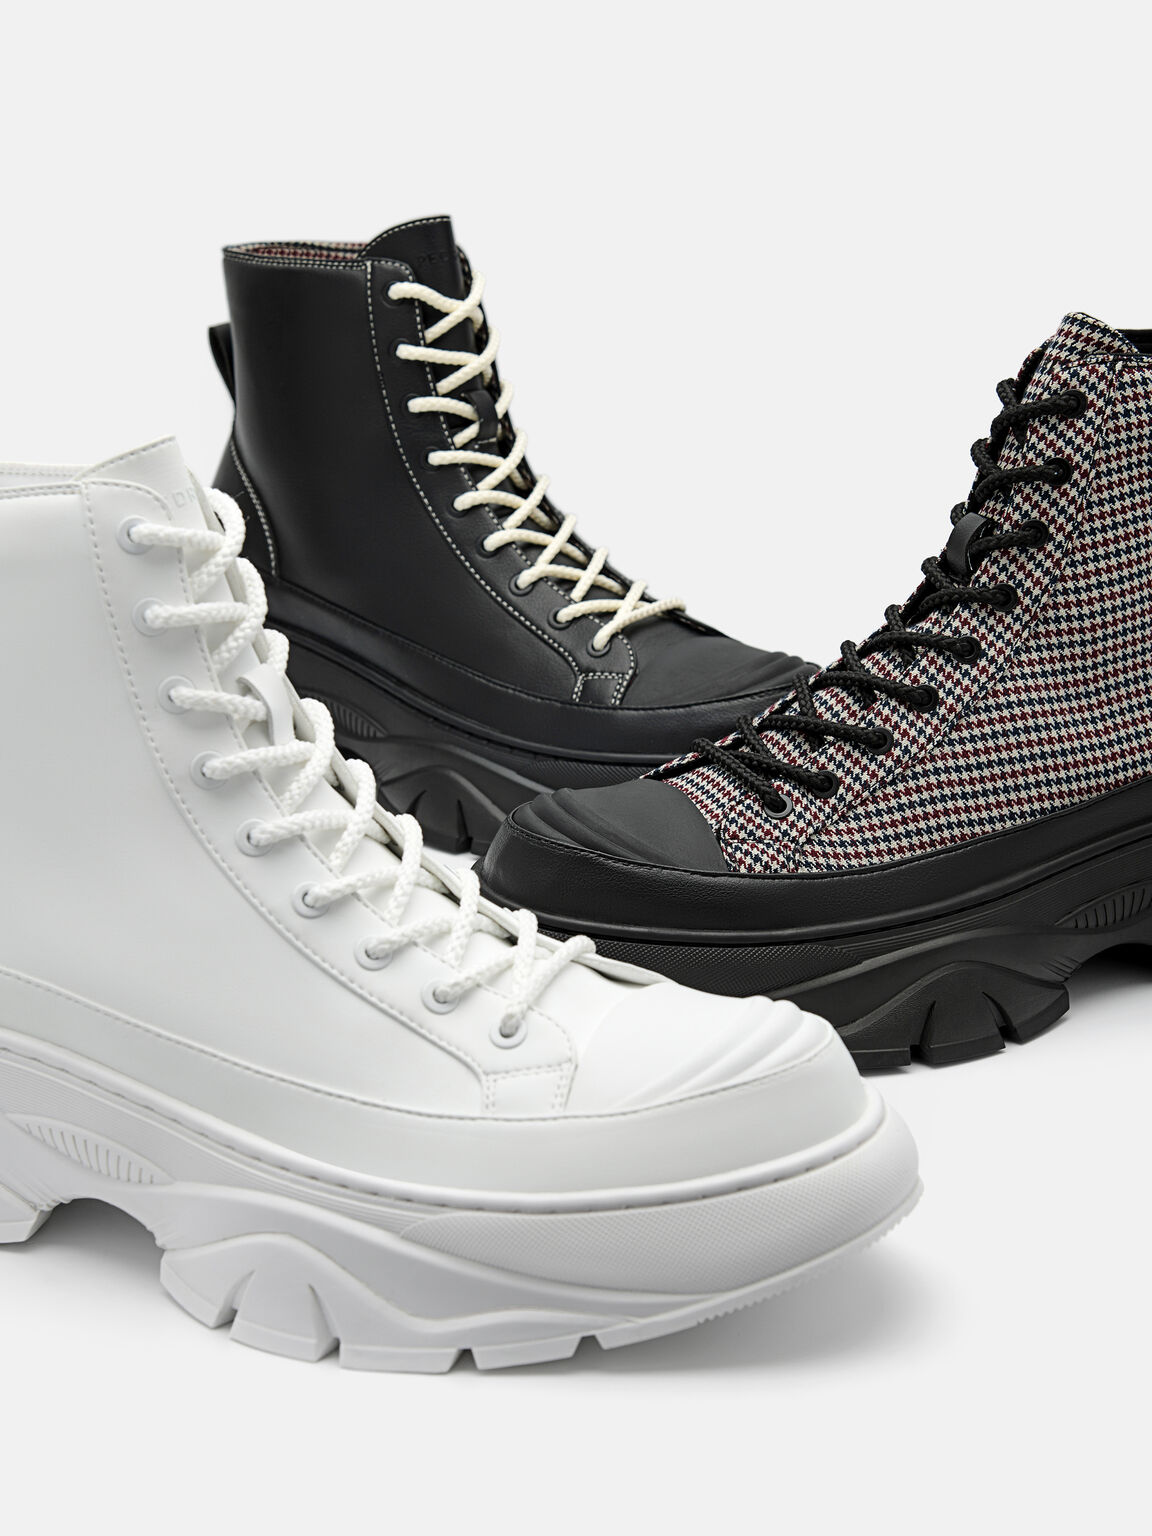 Men's Hybrix Lace-Up Boots, Black, hi-res